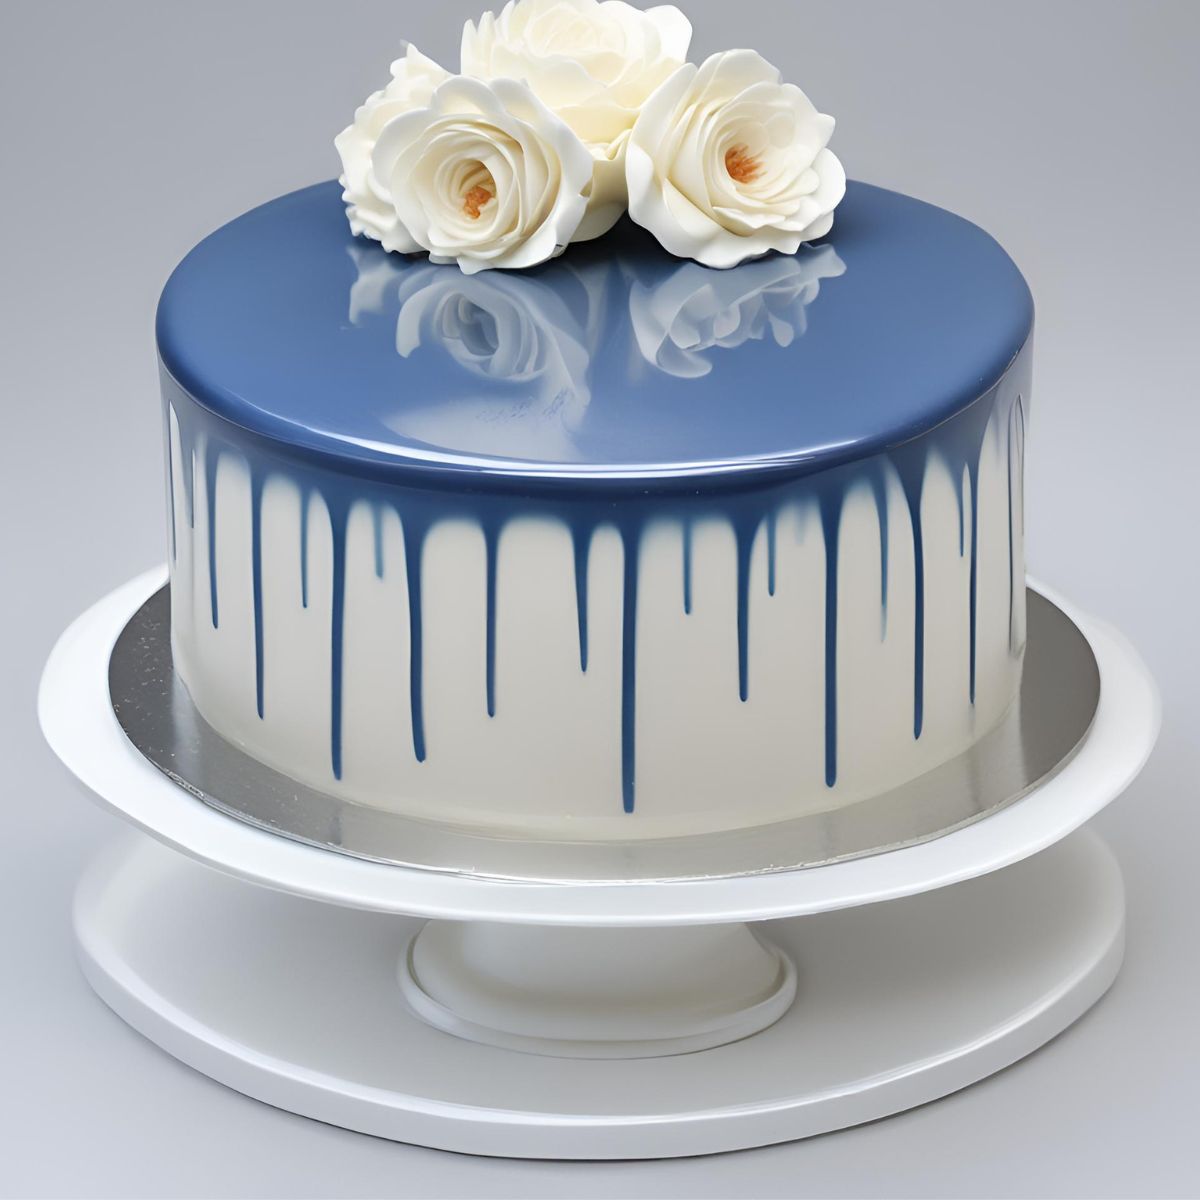 White Mirror Glaze Cake Recipe: Easy Steps to a Glossy Delight!